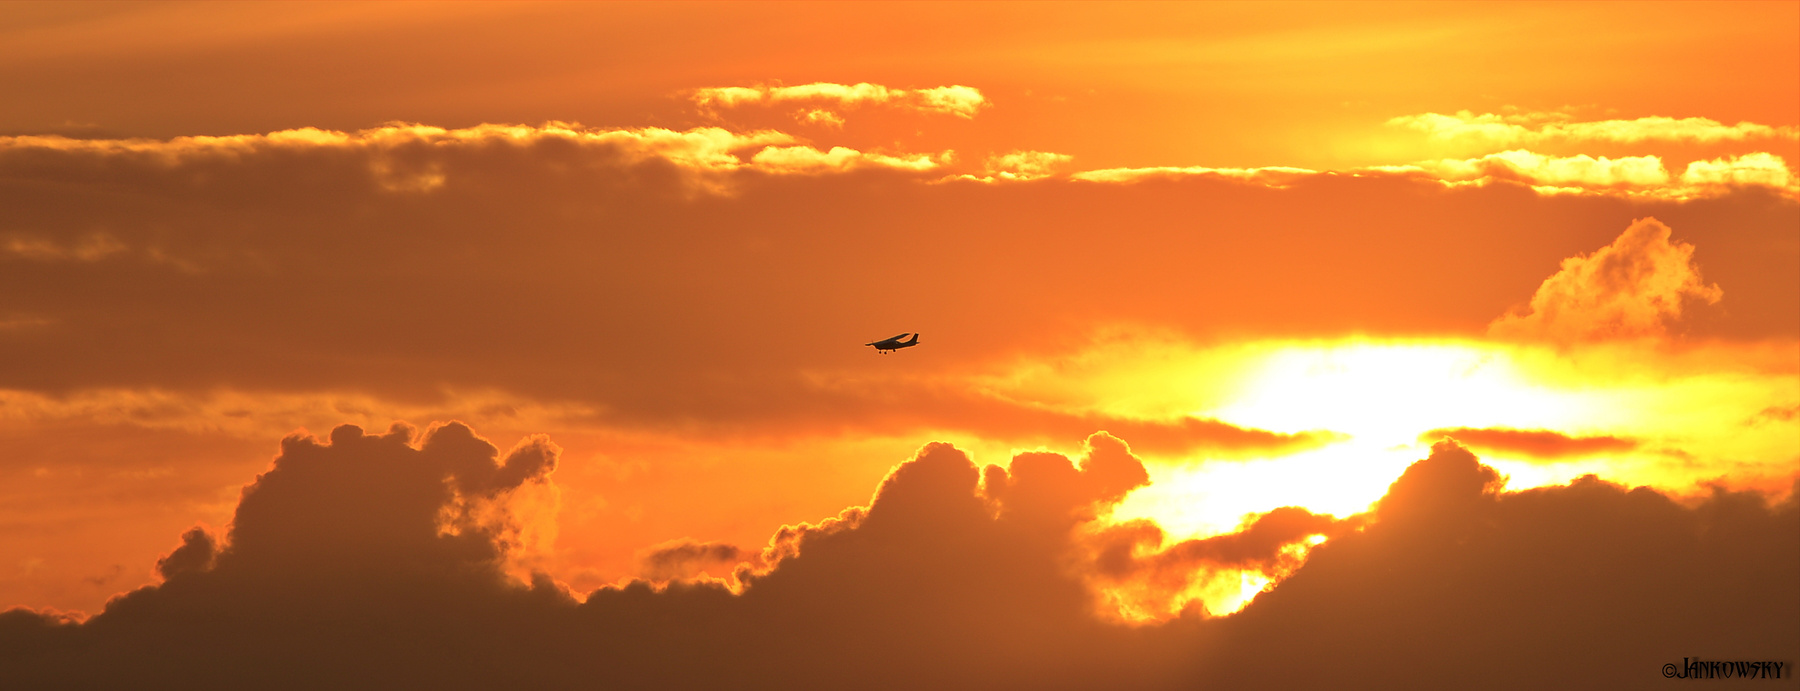 Омск. Полет  над  огненной бездной 13.09.20 полет облака самолет Cessna воздушная экскурсия оранжевое небо бездна омск